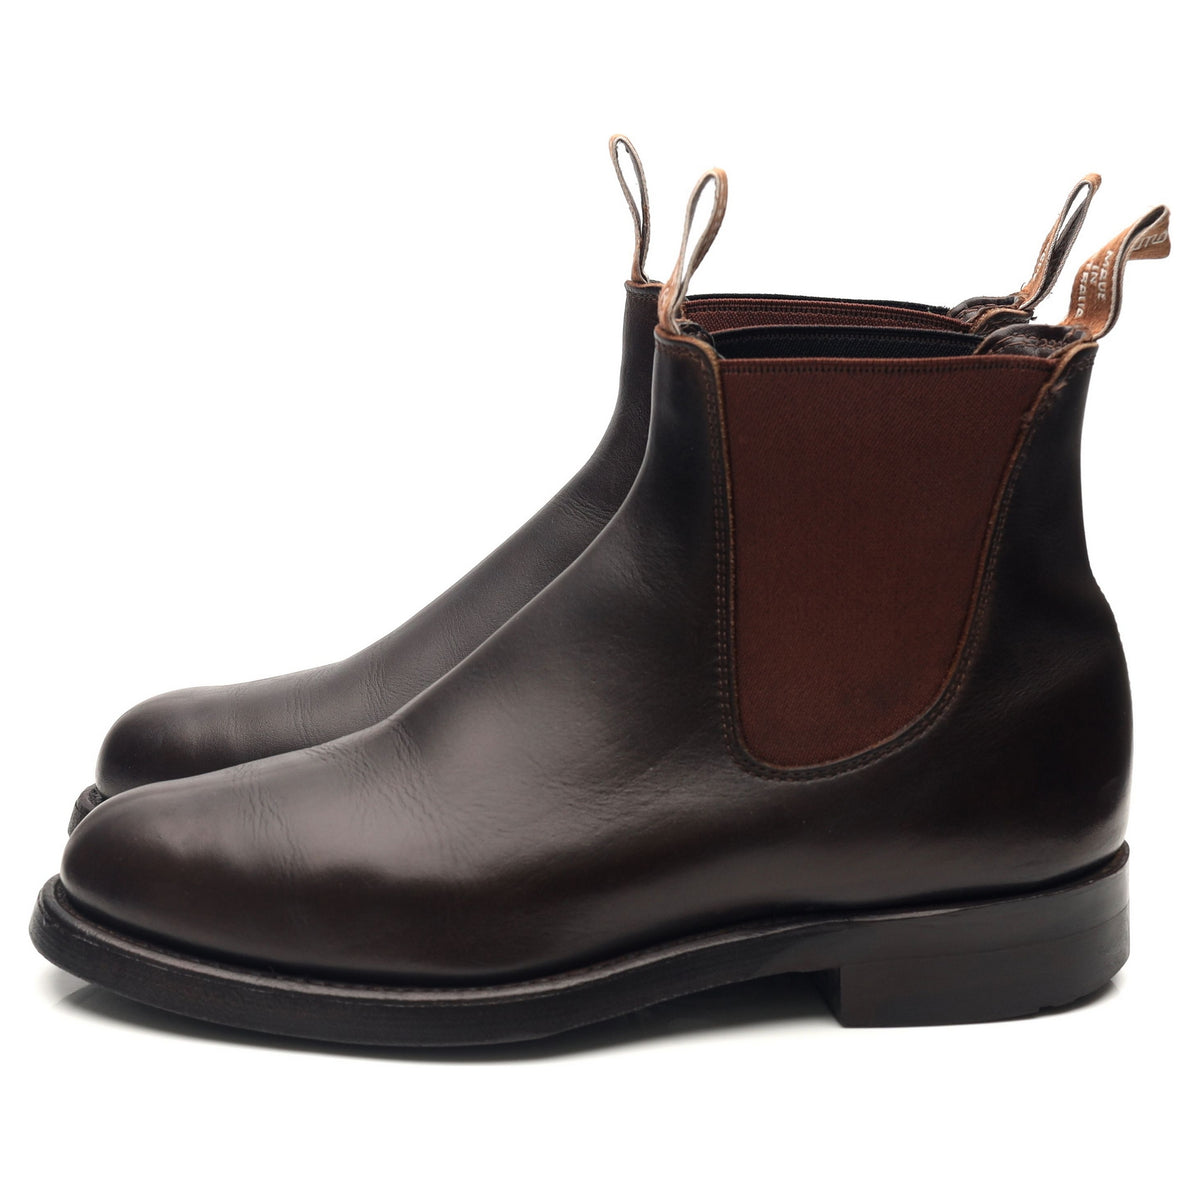  R.M. Williams Men's Gardner Leather Chelsea Boots, Black, 7  Medium US